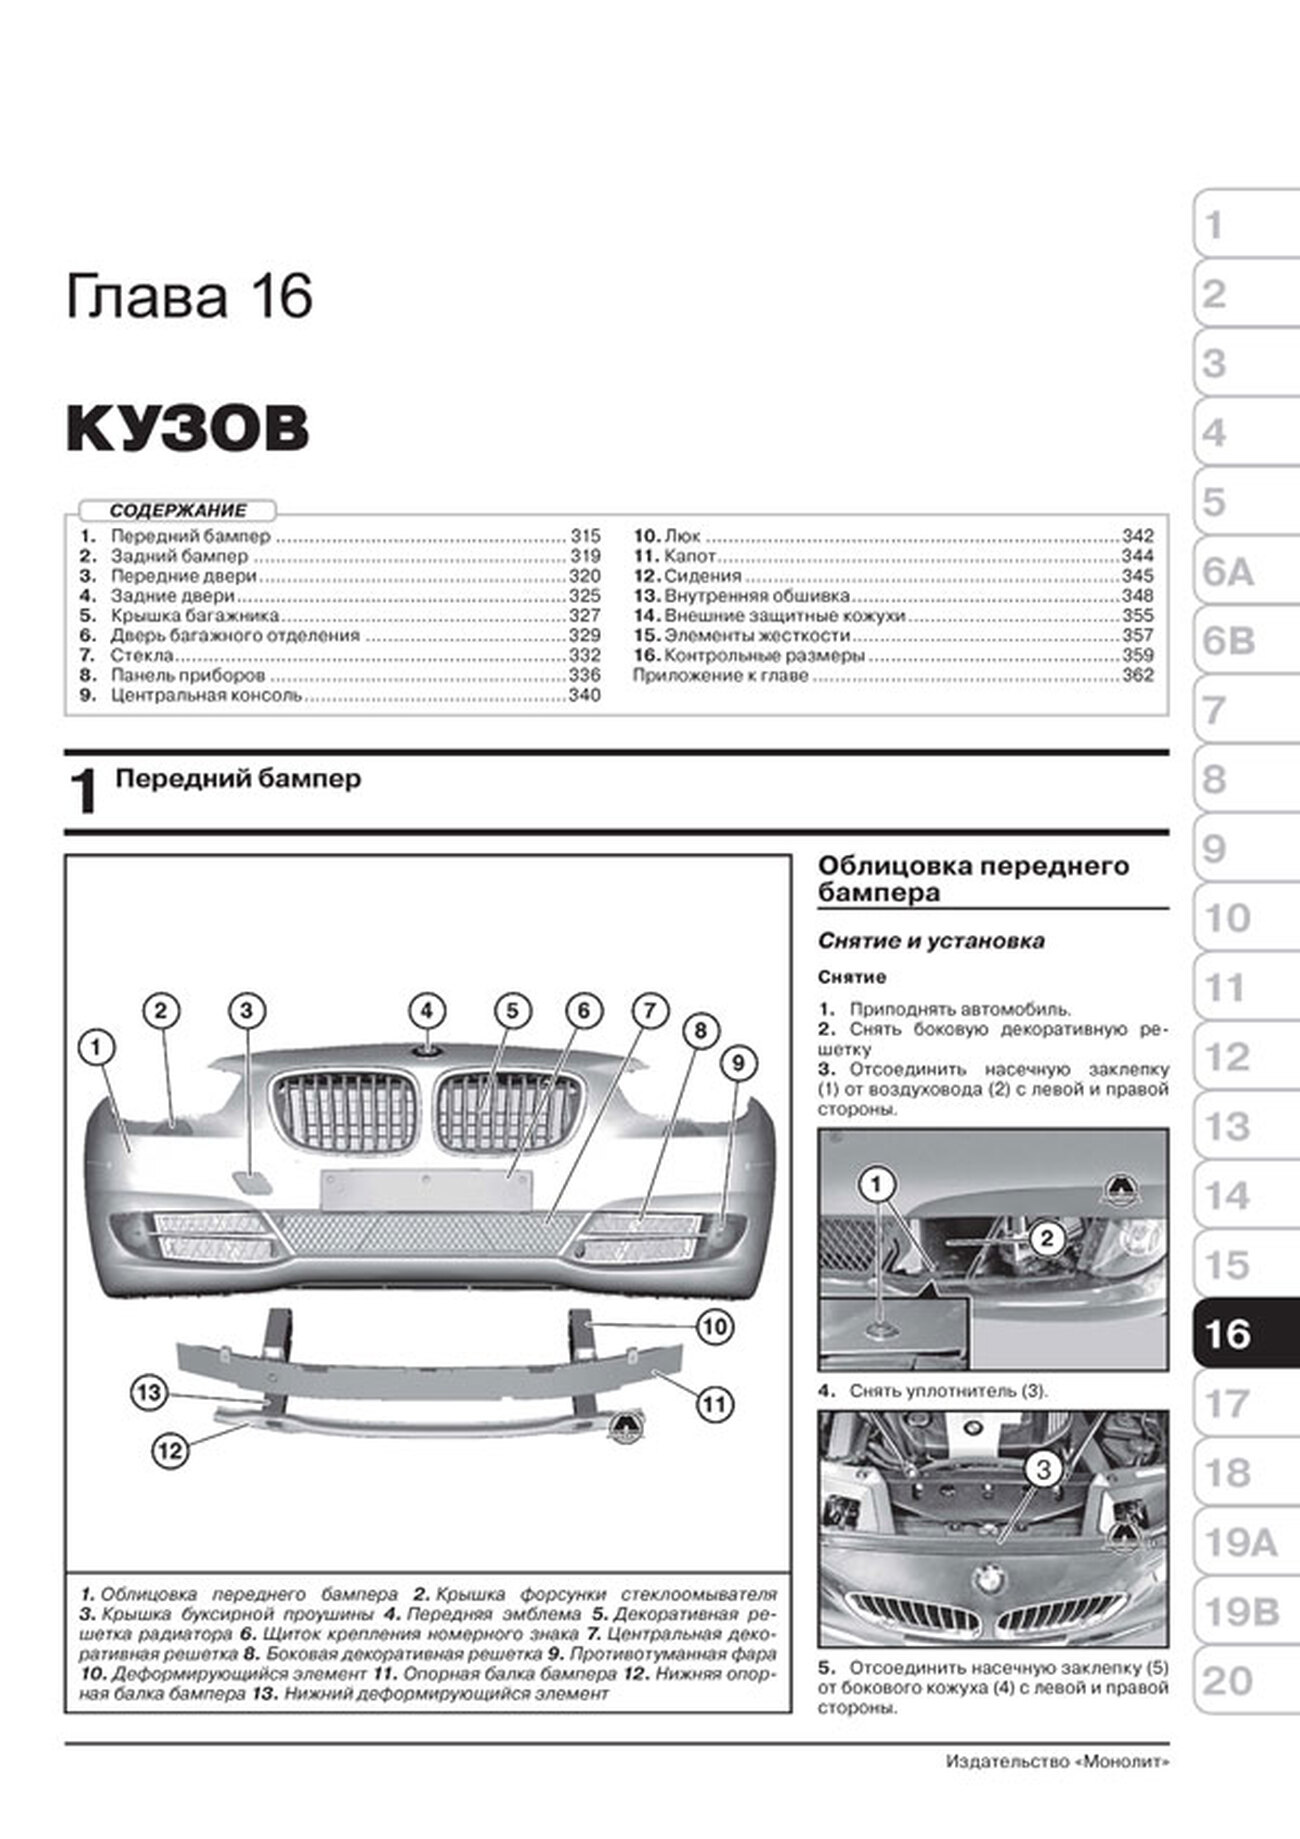 Книга: BMW 5 серии (F10 / F11) (б , д) с 2010 + рест. 2013 г.в., рем., экспл., то, сер. ЗС | Монолит